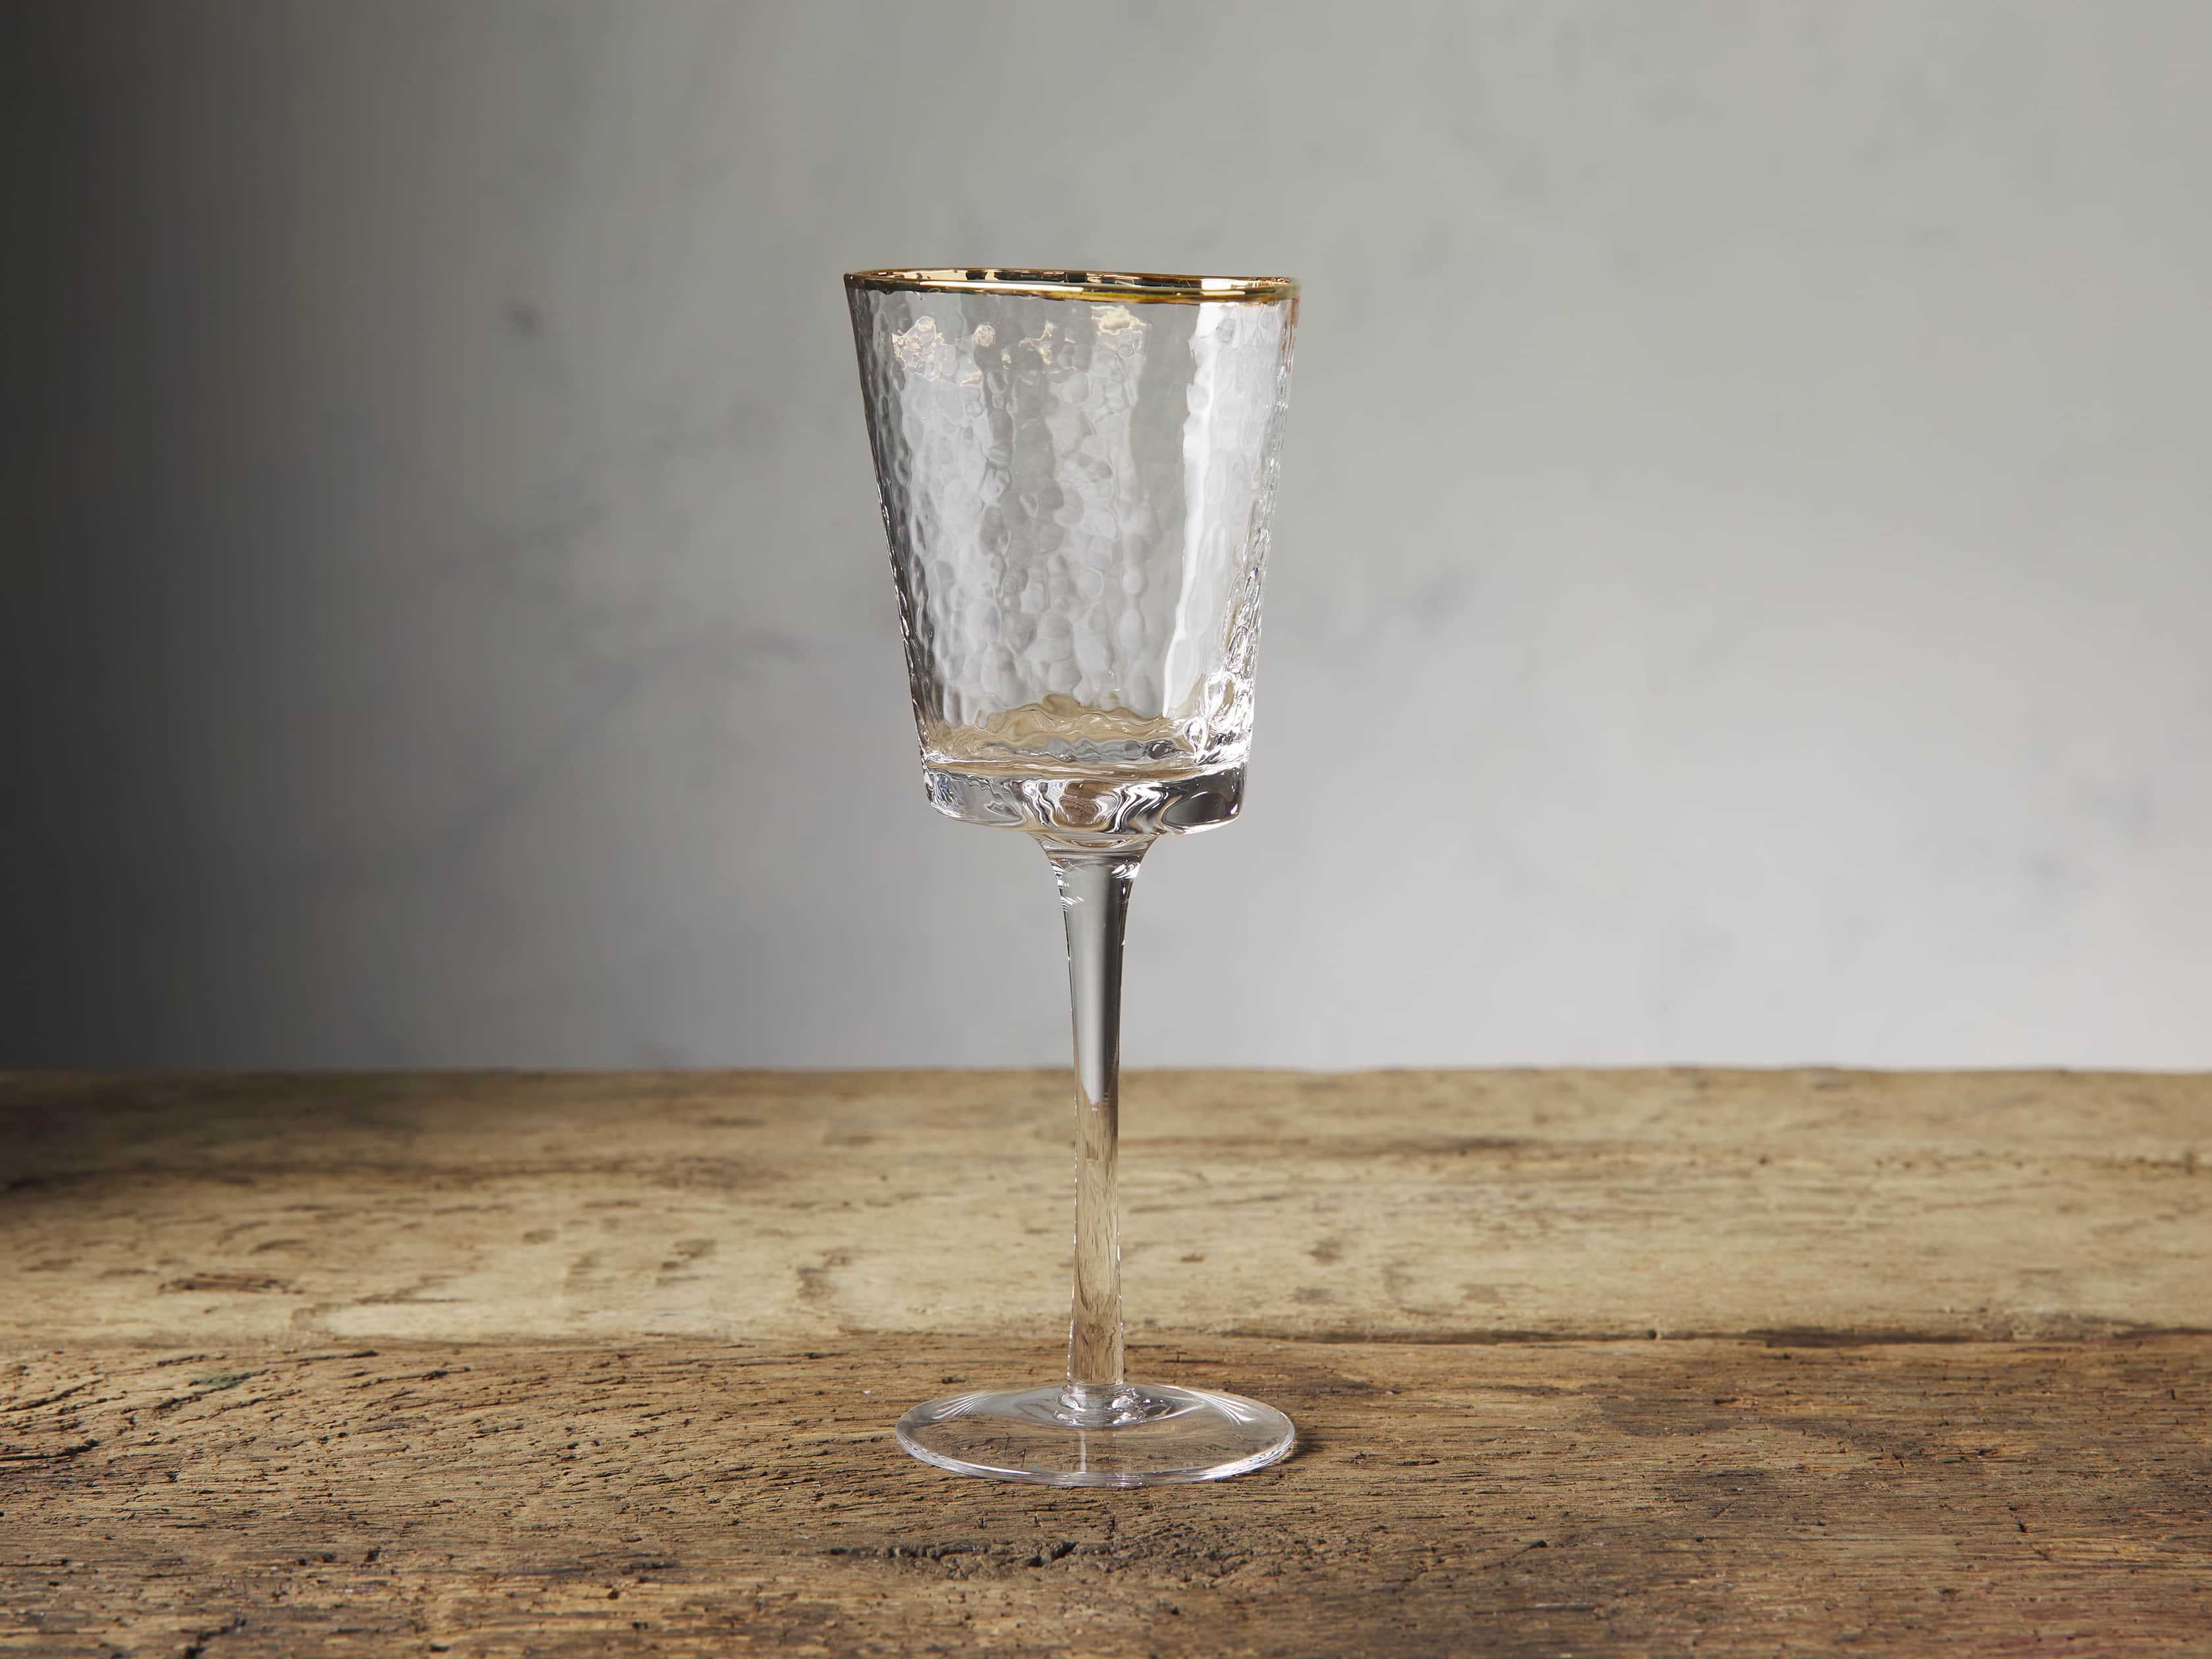 Axlan Fluted Textured Wine Glasses (Set of 4) Brayden Studio